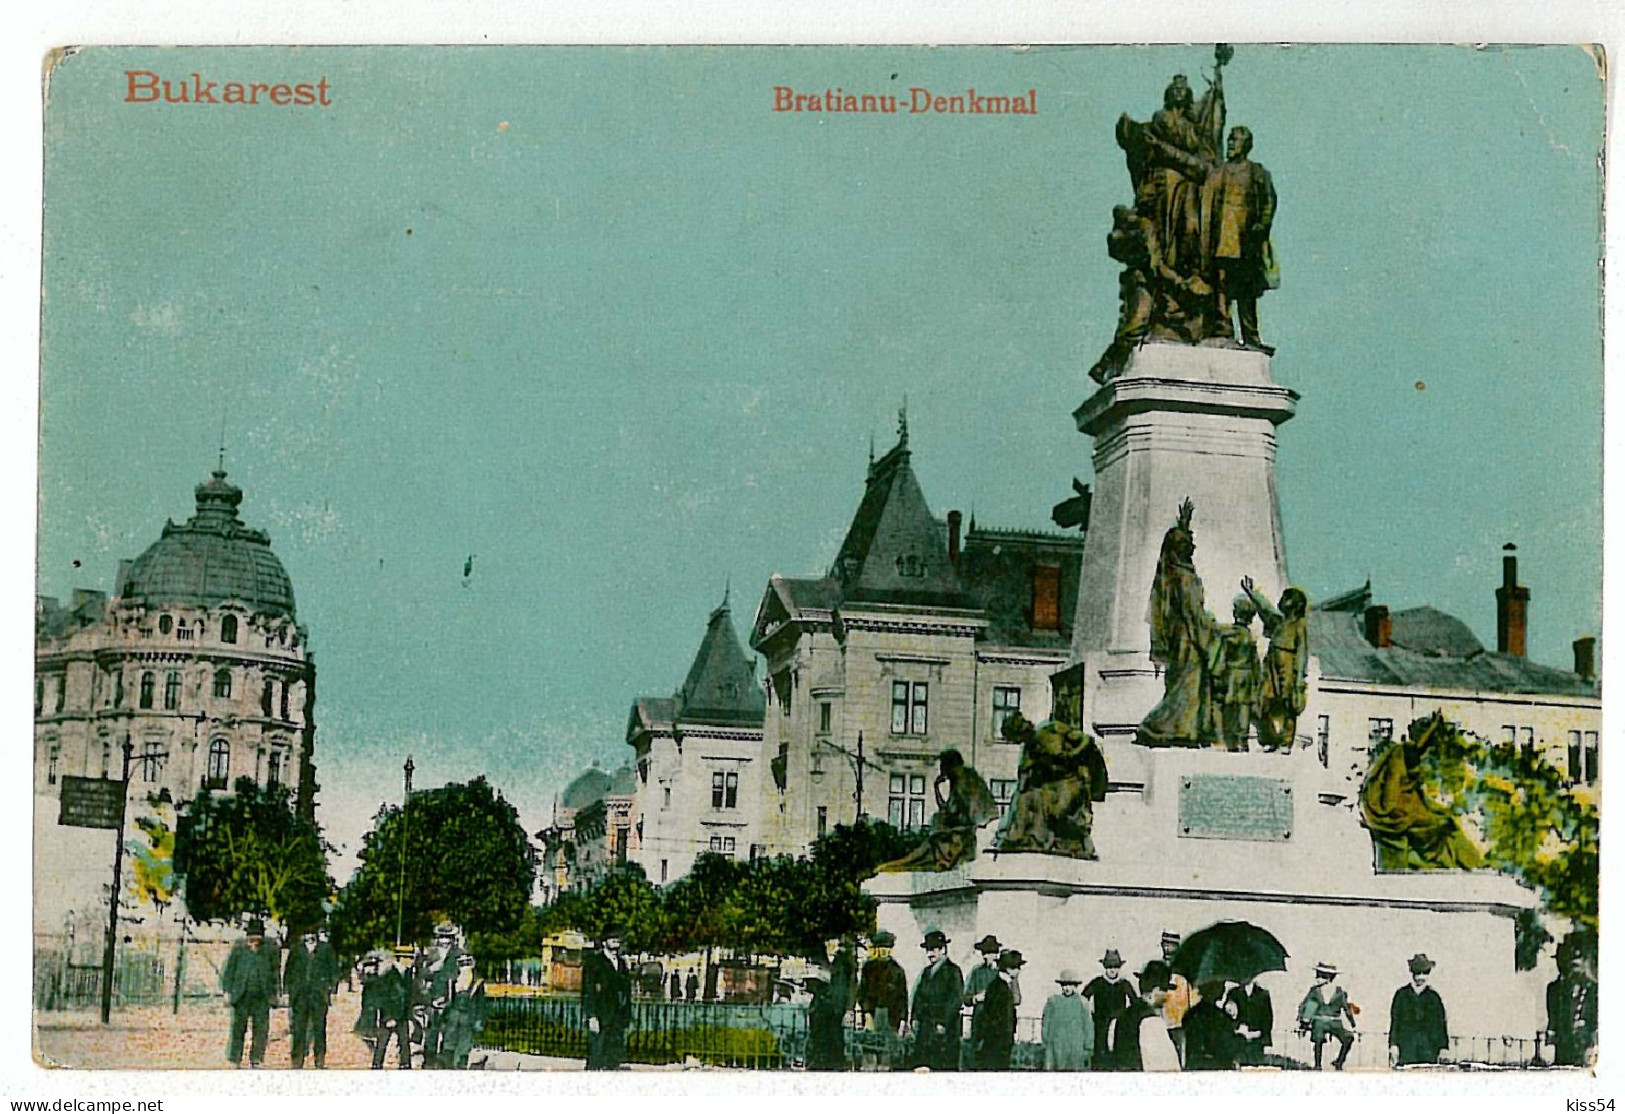 RO 40 - 1375 BUCURESTI, Bratianu Statue, Romania - Old Postcard - Used - 1917 - Rumänien